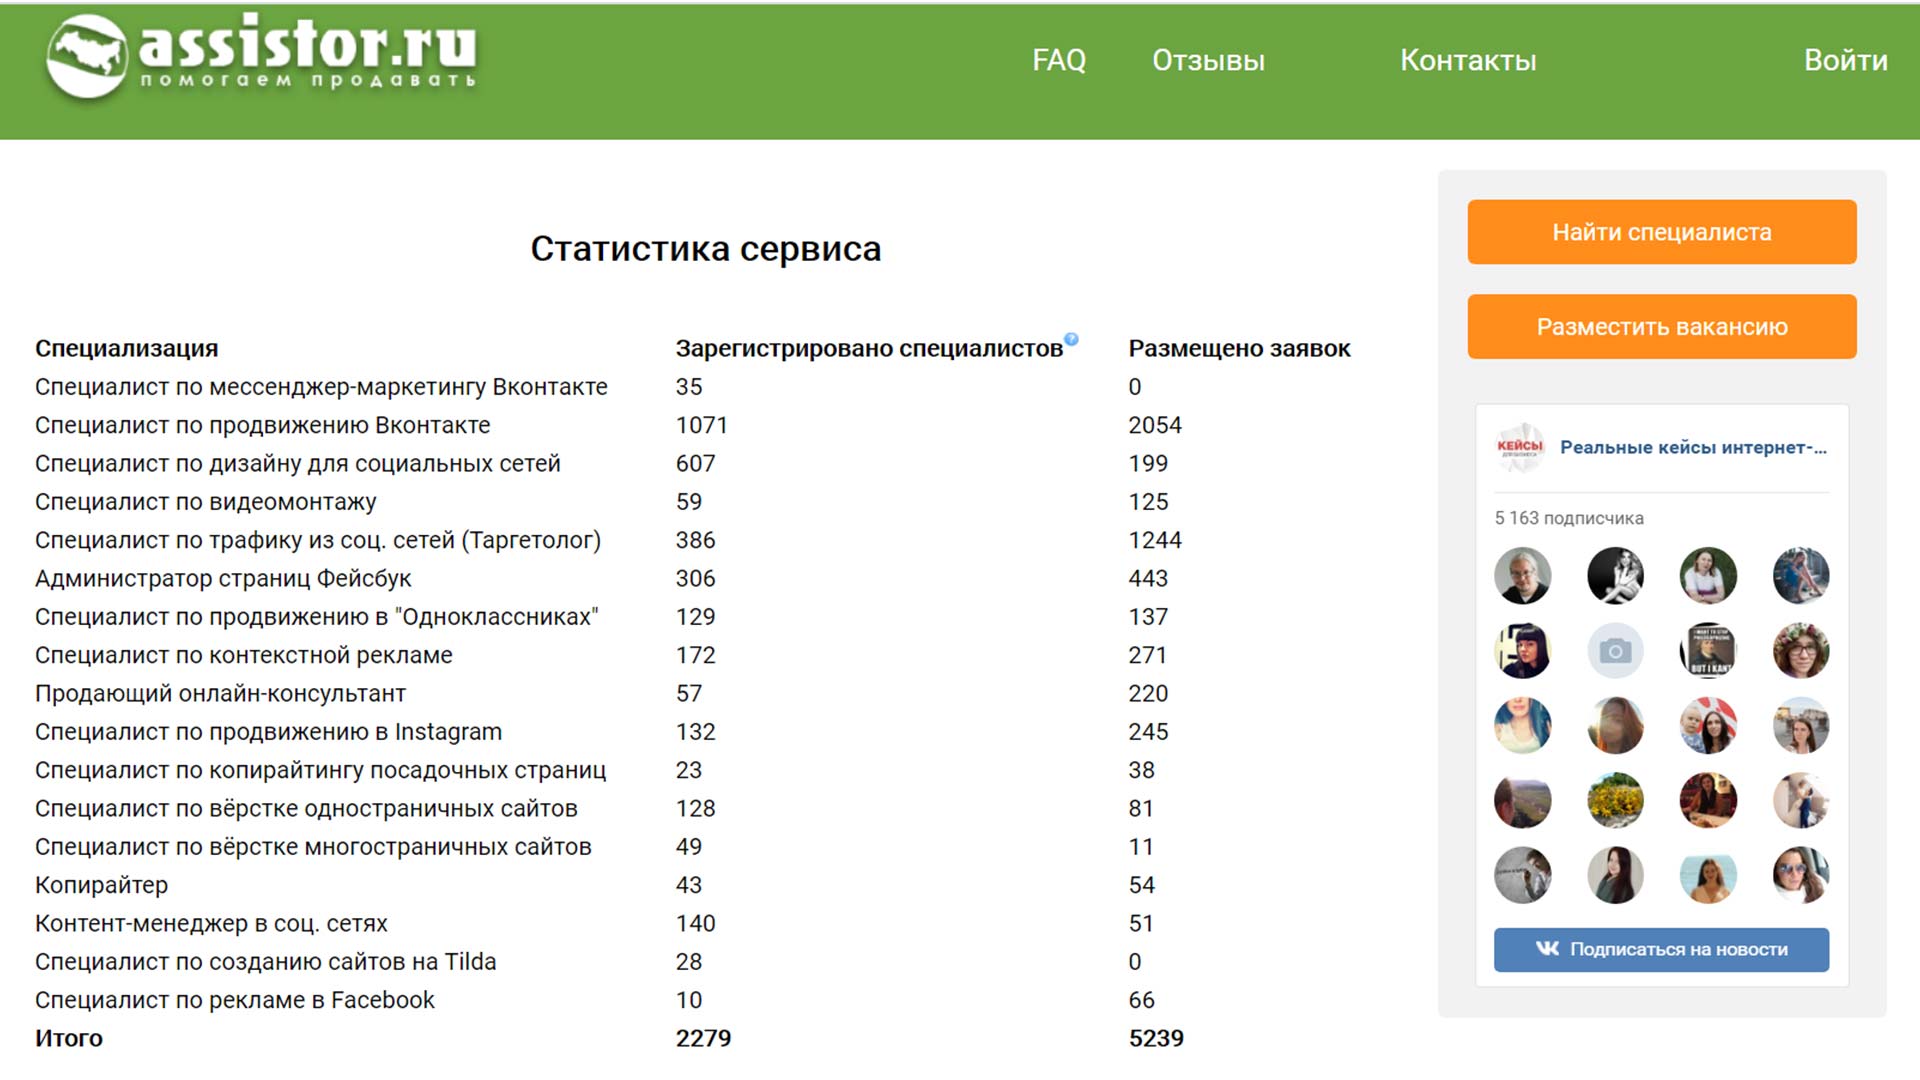 Статистика на бирже Assistor.ru